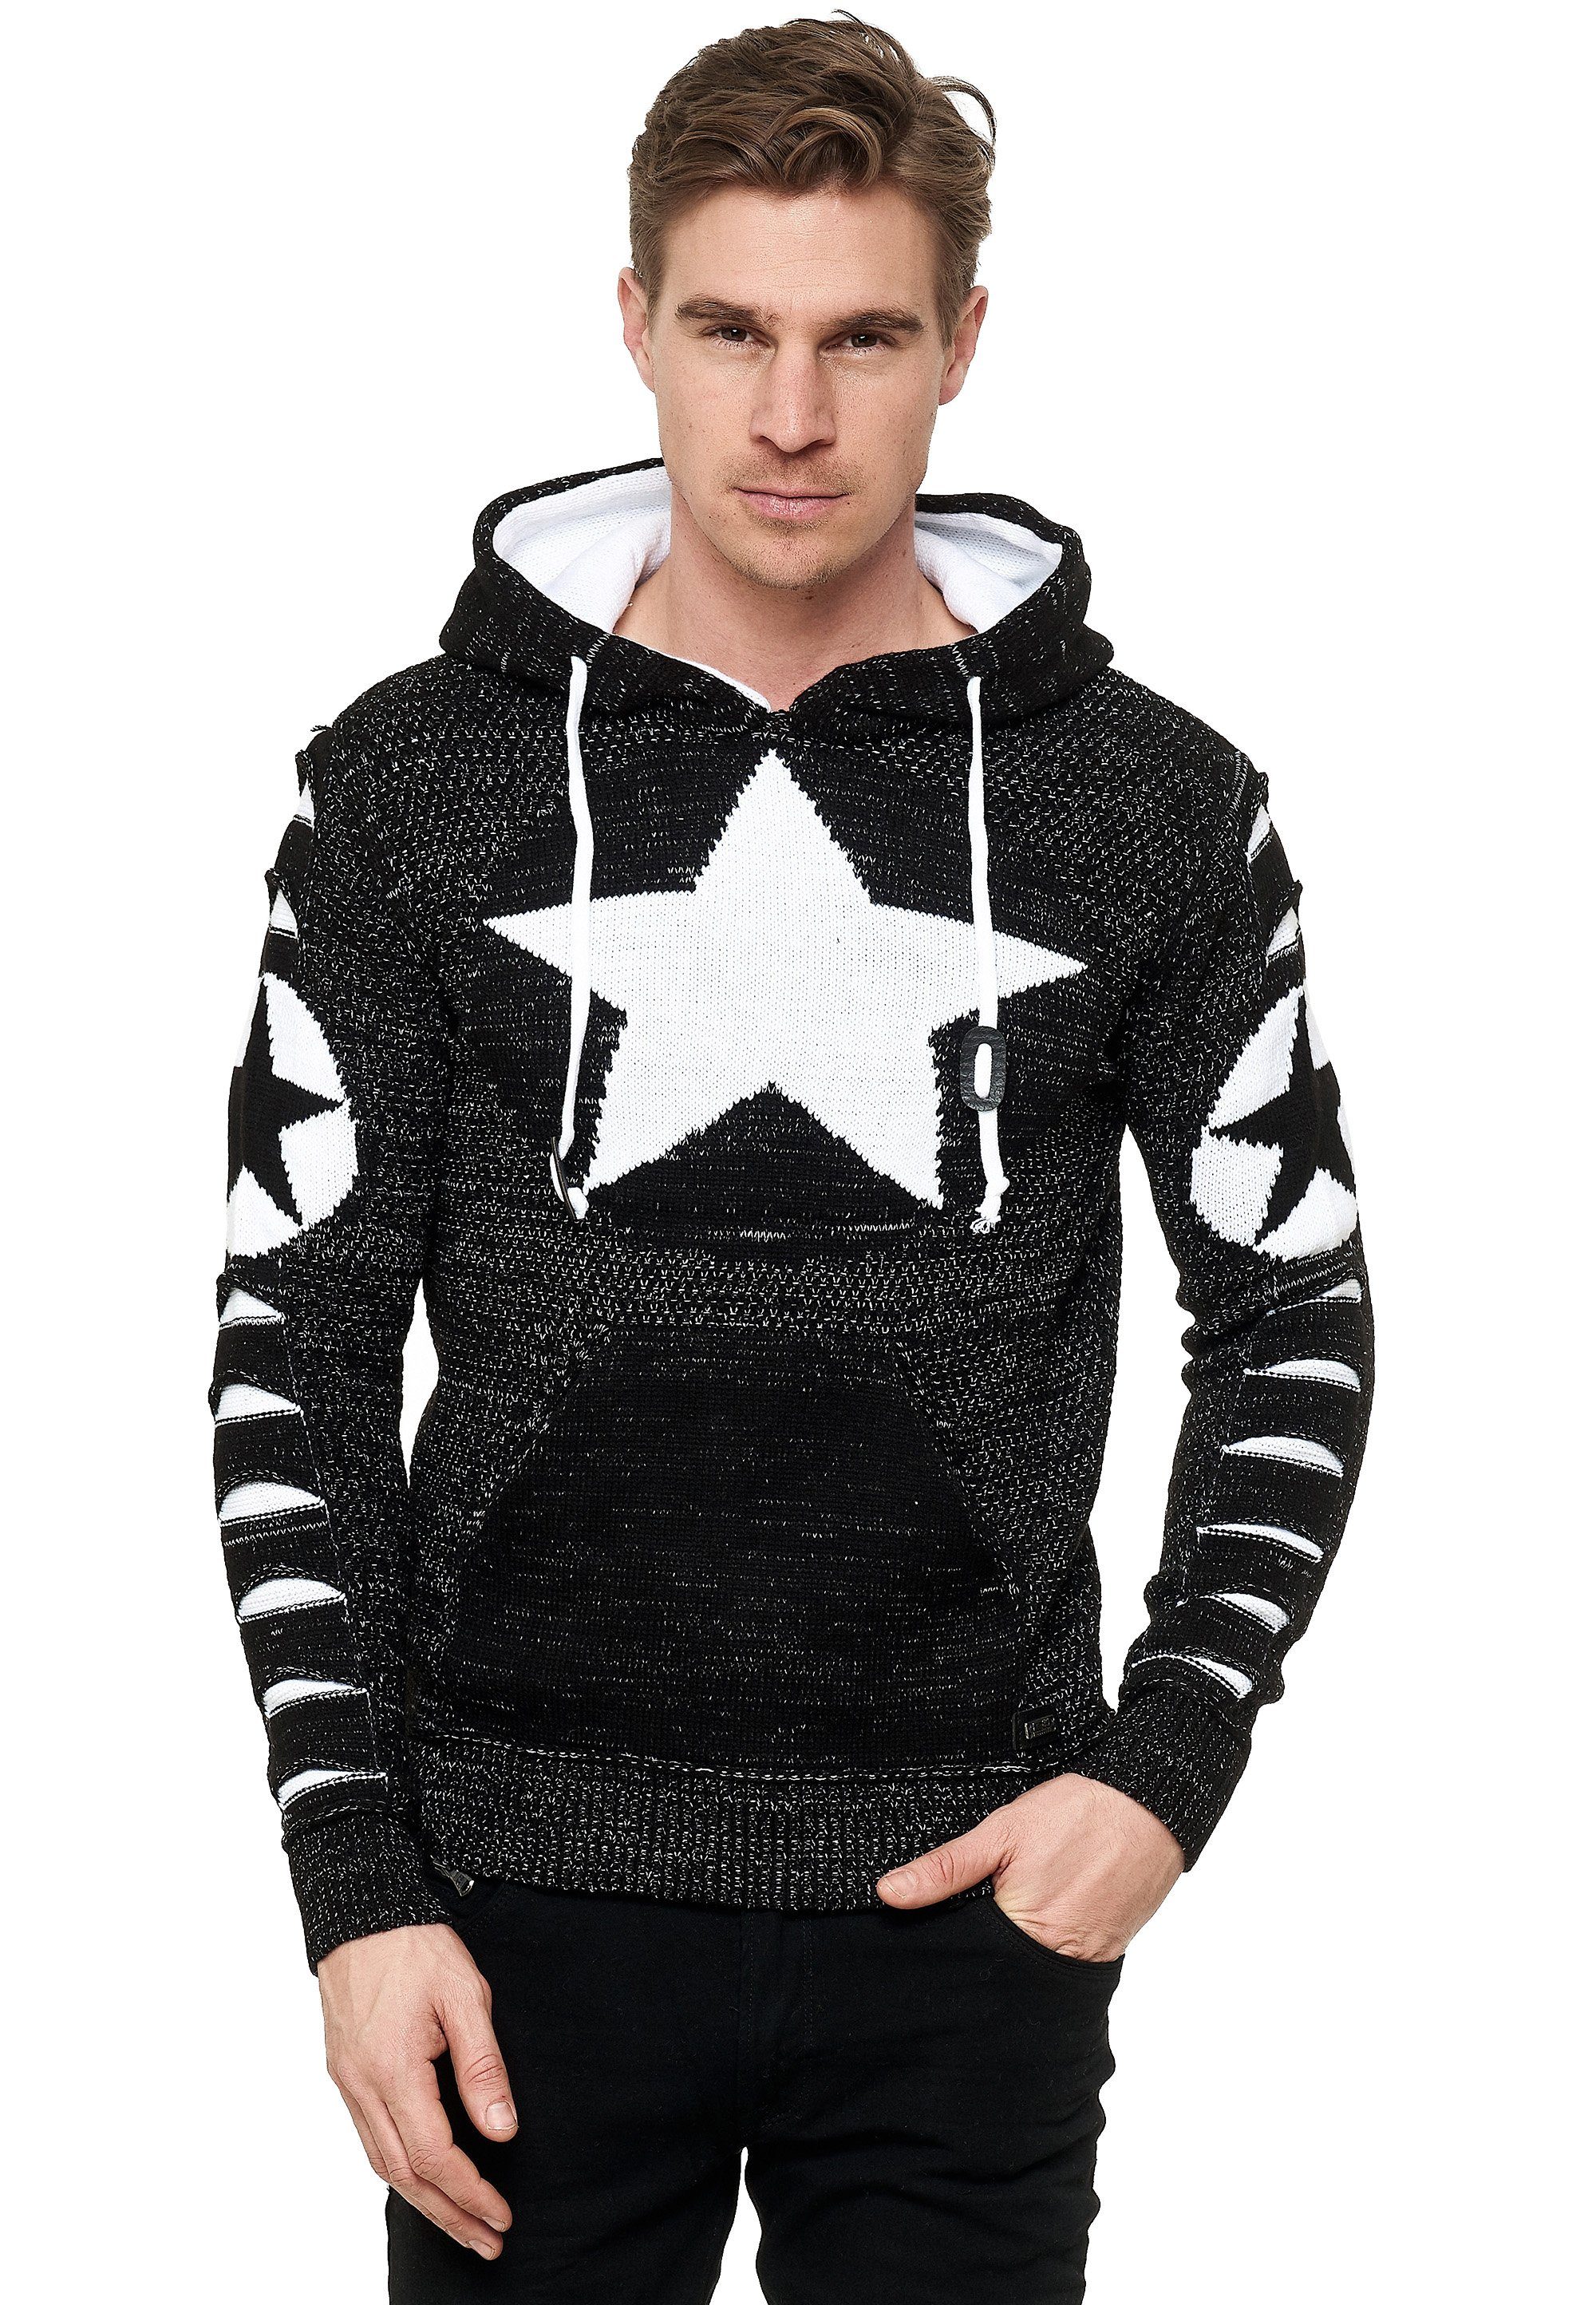 Holen Sie es sich günstig! Rusty Neal schwarz-weiß Kapuzensweatshirt großem mit Stern-Design